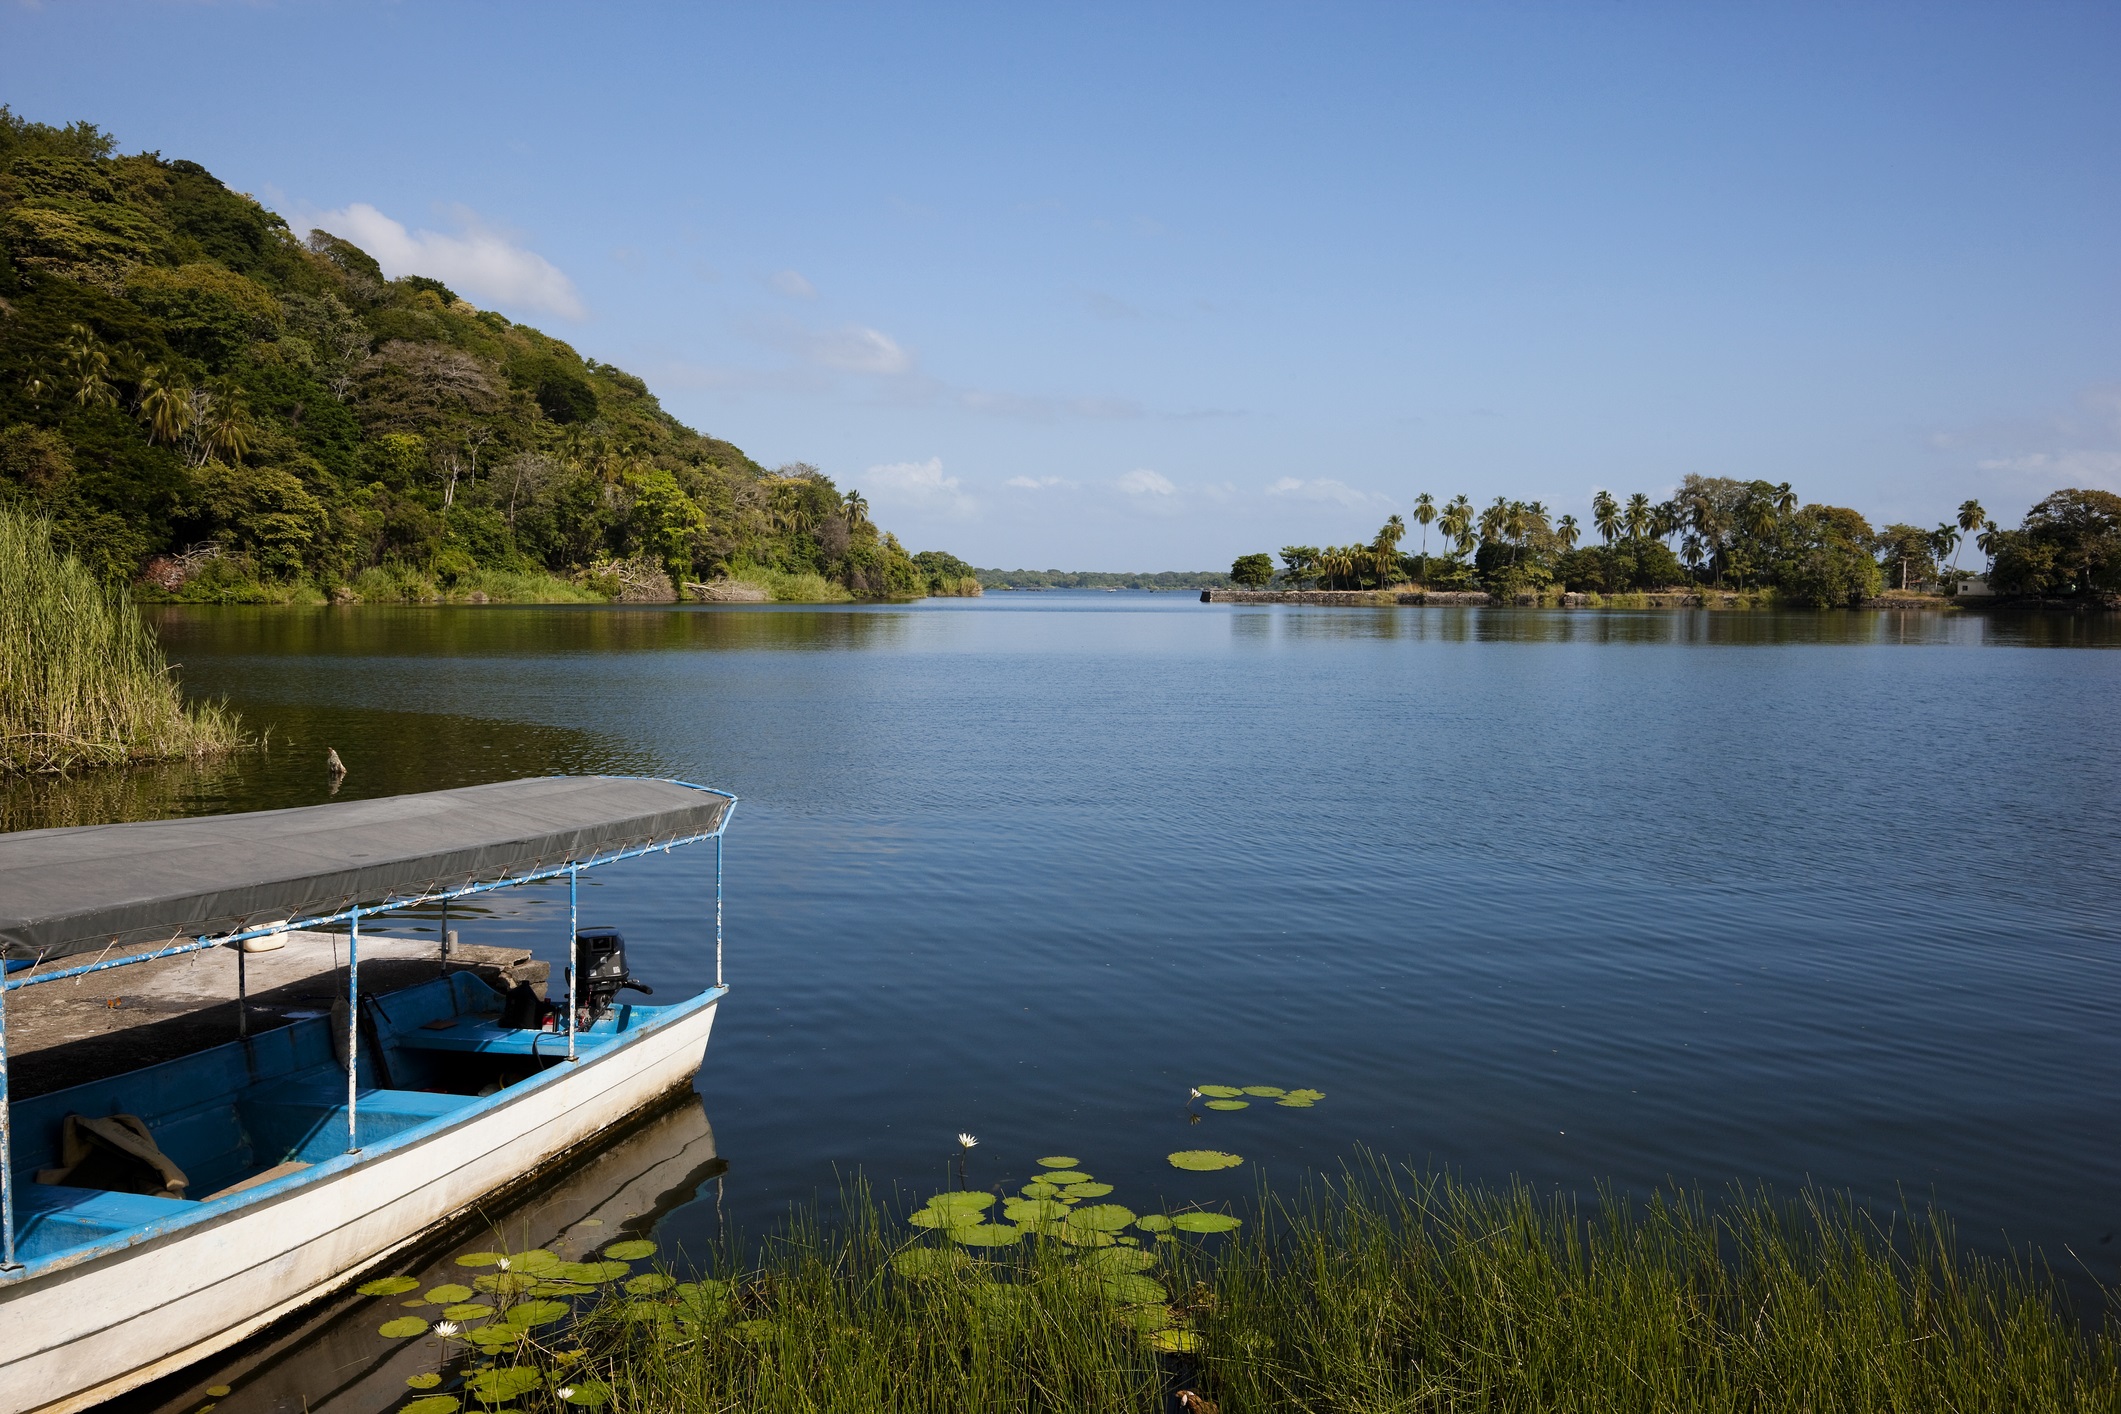 <p><strong>Край на идиличното езеро Никарагуа</strong></p>

<p>В бъдеще тук биха могли да се движат контейнеровози вместо лодки. Защото маршрутът на канала Никарагуа, който трябва да свързва Карибско море с Тихия океан, минава през средата на езерото Никарагуа. Десетки хиляди хора трябва да бъдат преместени. Еколозите се страхуват от опасности за цялата екосистема на езерото и за снабдяването на населението с питейна вода.</p>